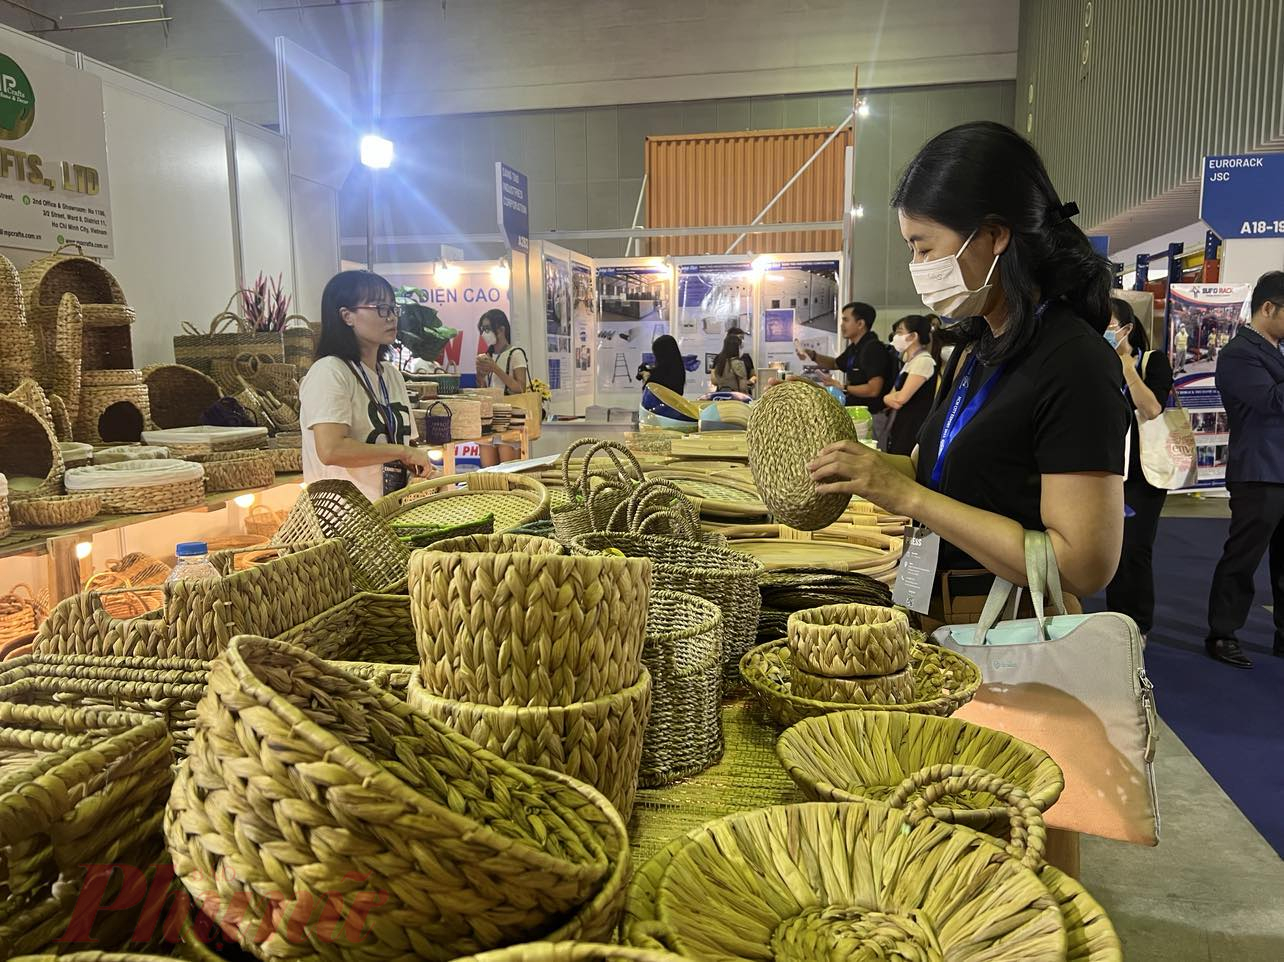 Doanh nghiệp xuất nhập khẩu tham gia hội chợ để tìm kiếm đơn hàng - Ảnh: Nguyễn Cẩm